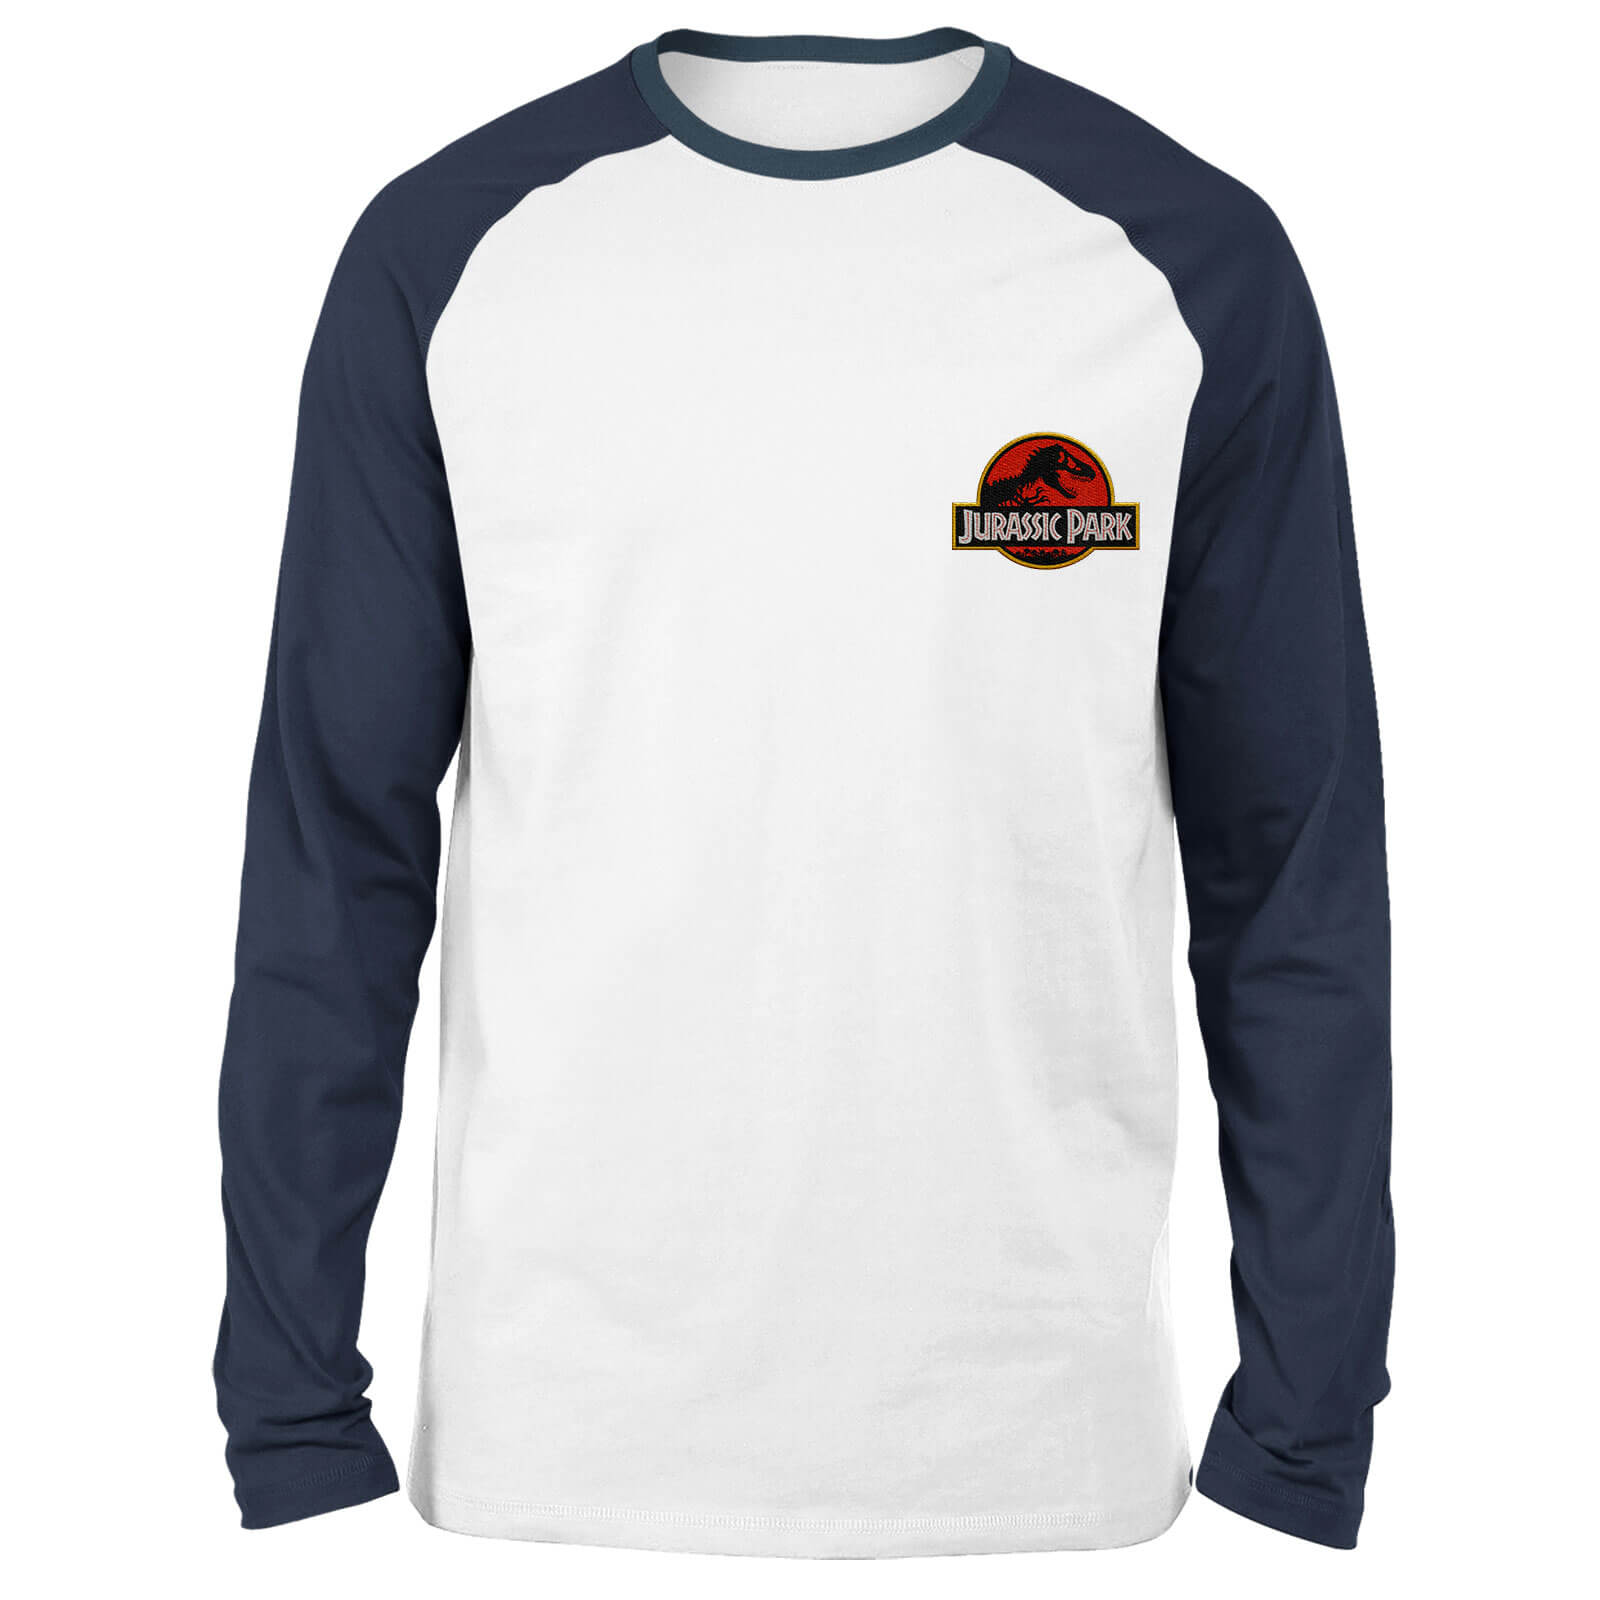 Jurassic Park Logo Embroidered Unisex Long Sleeved Raglan T-Shirt - White/Navy - S